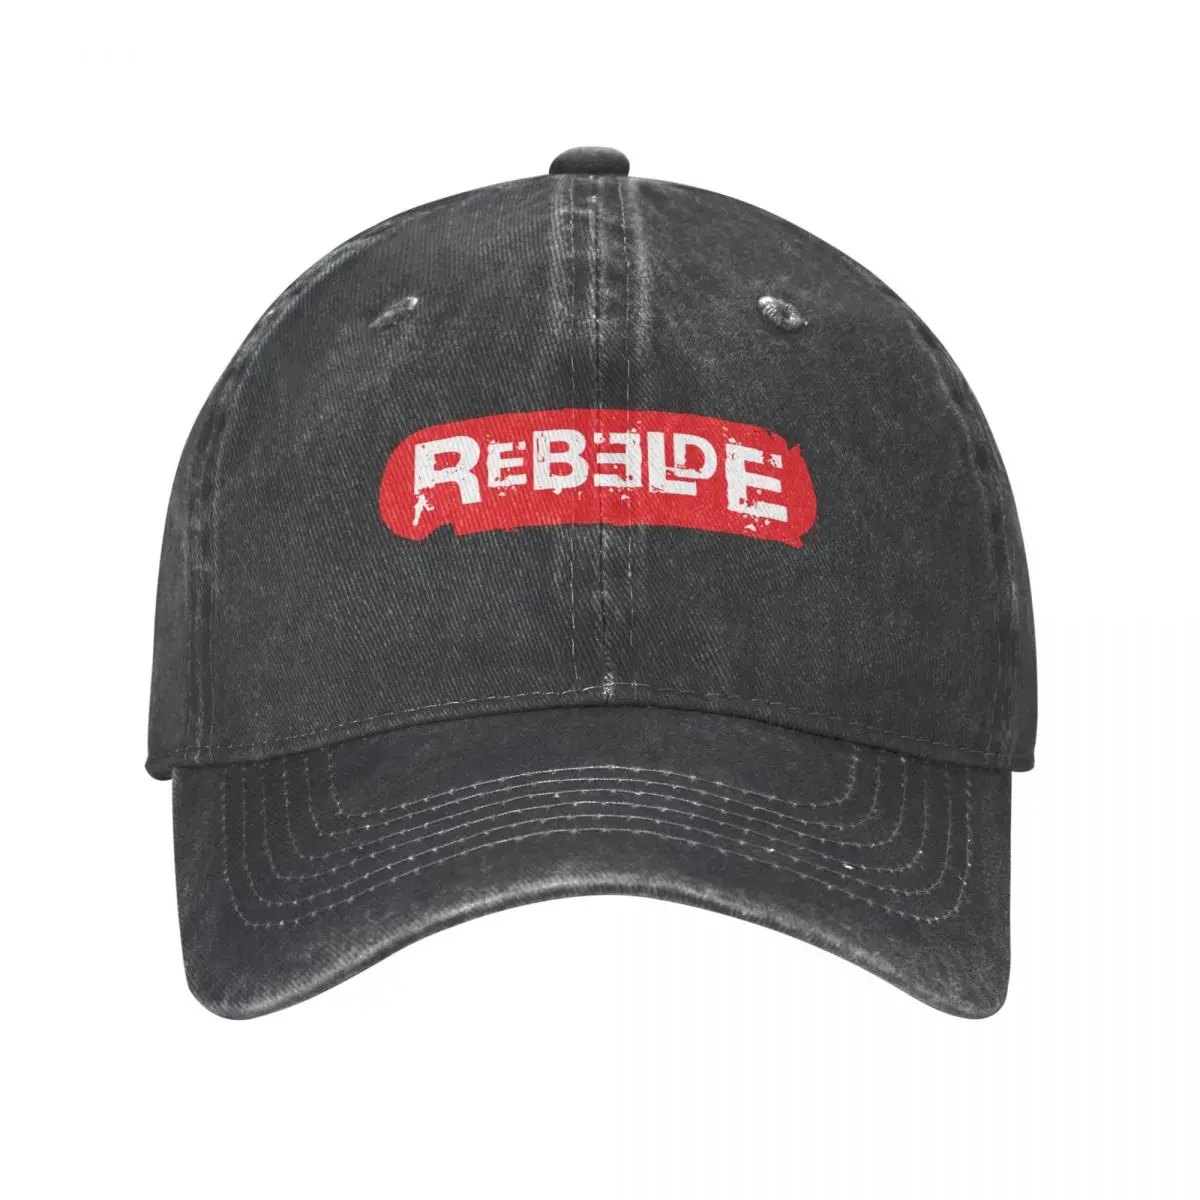 Бейсболка из промытого хлопка с логотипом Rebelde, регулируемая бейсбольная кепка, мужская бейсболка RBD, весенне-осенняя кепка в стиле хип-хоп.